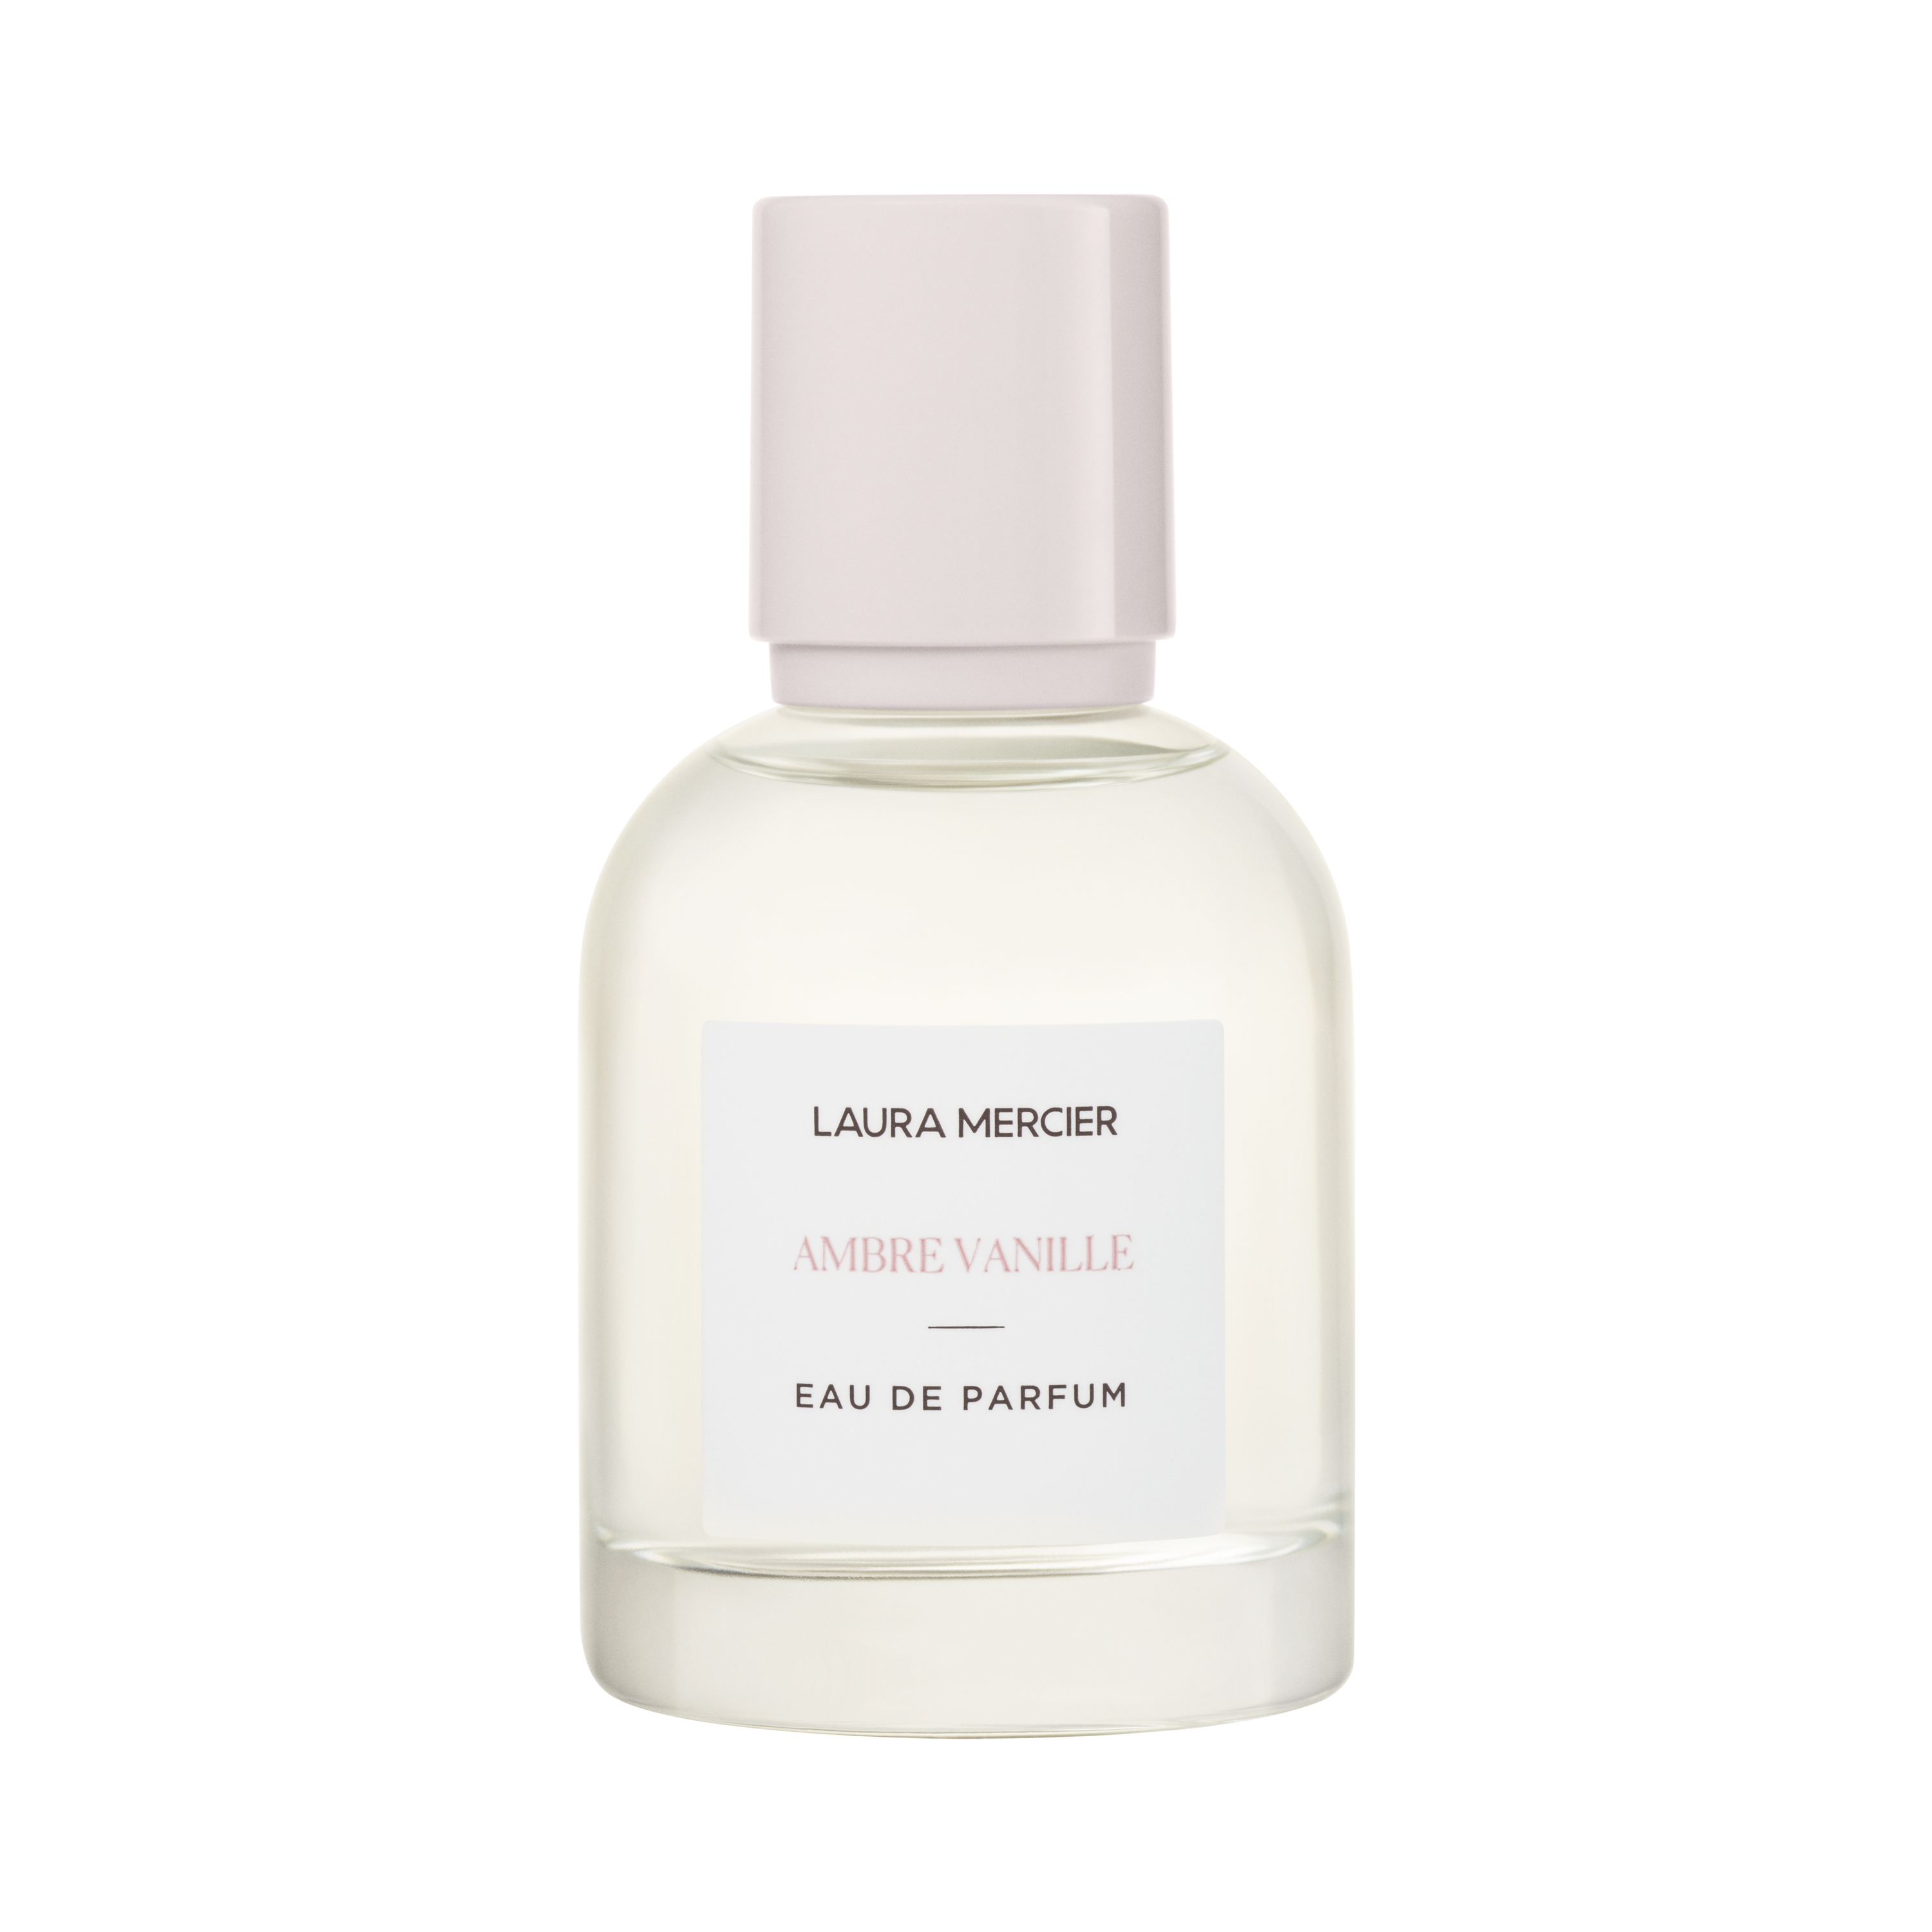 Perfume for Women  Ambre Vanille, Néroli du Sud & Vanille Eau de